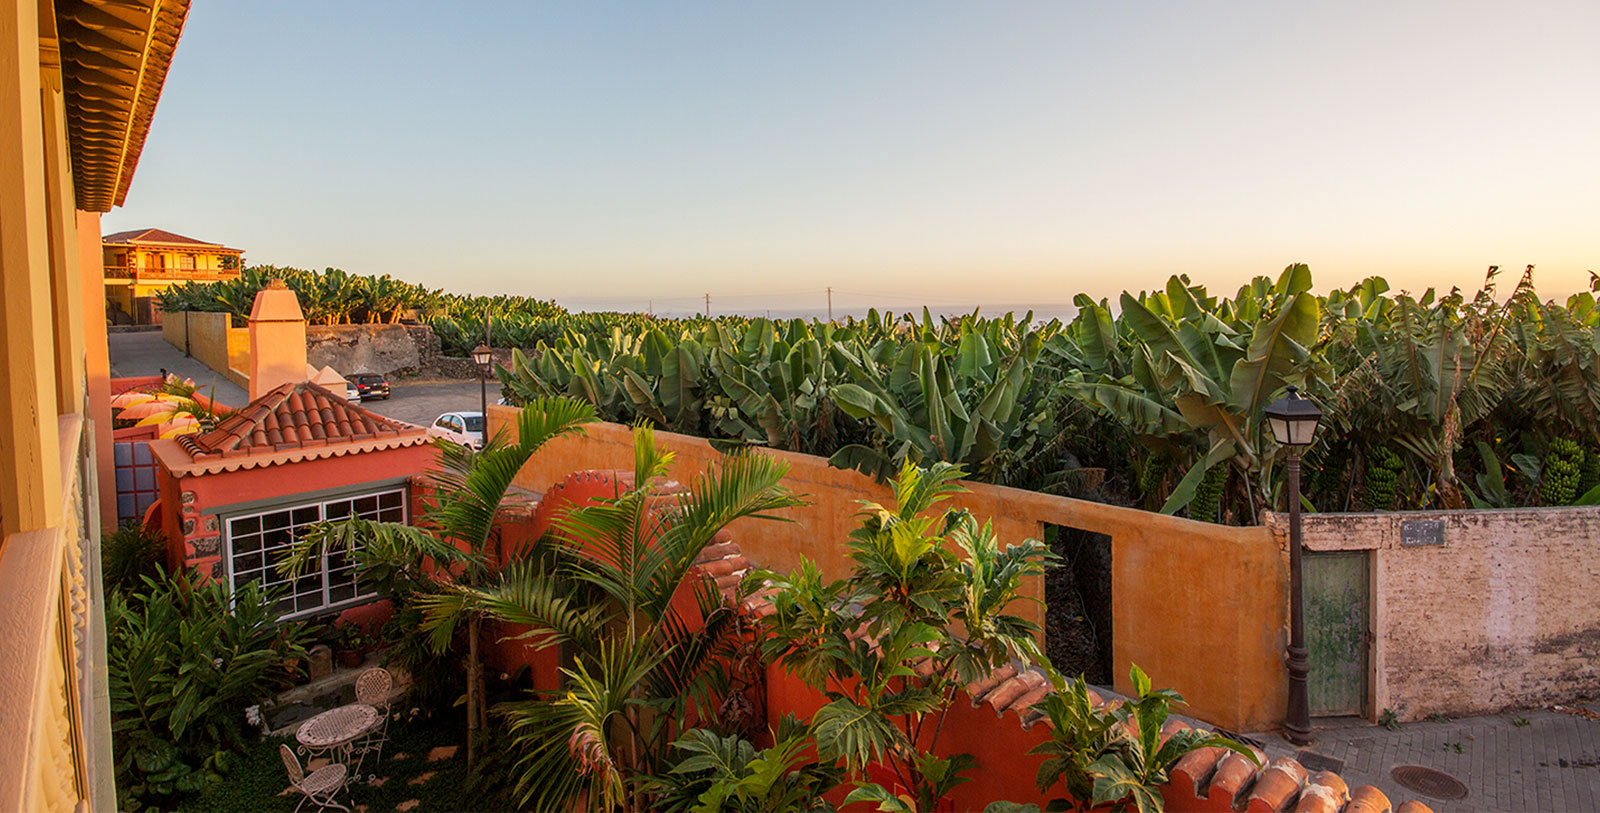 Explore the island of La Palma and its fascinating capital, Santa Cruz de la Palma.